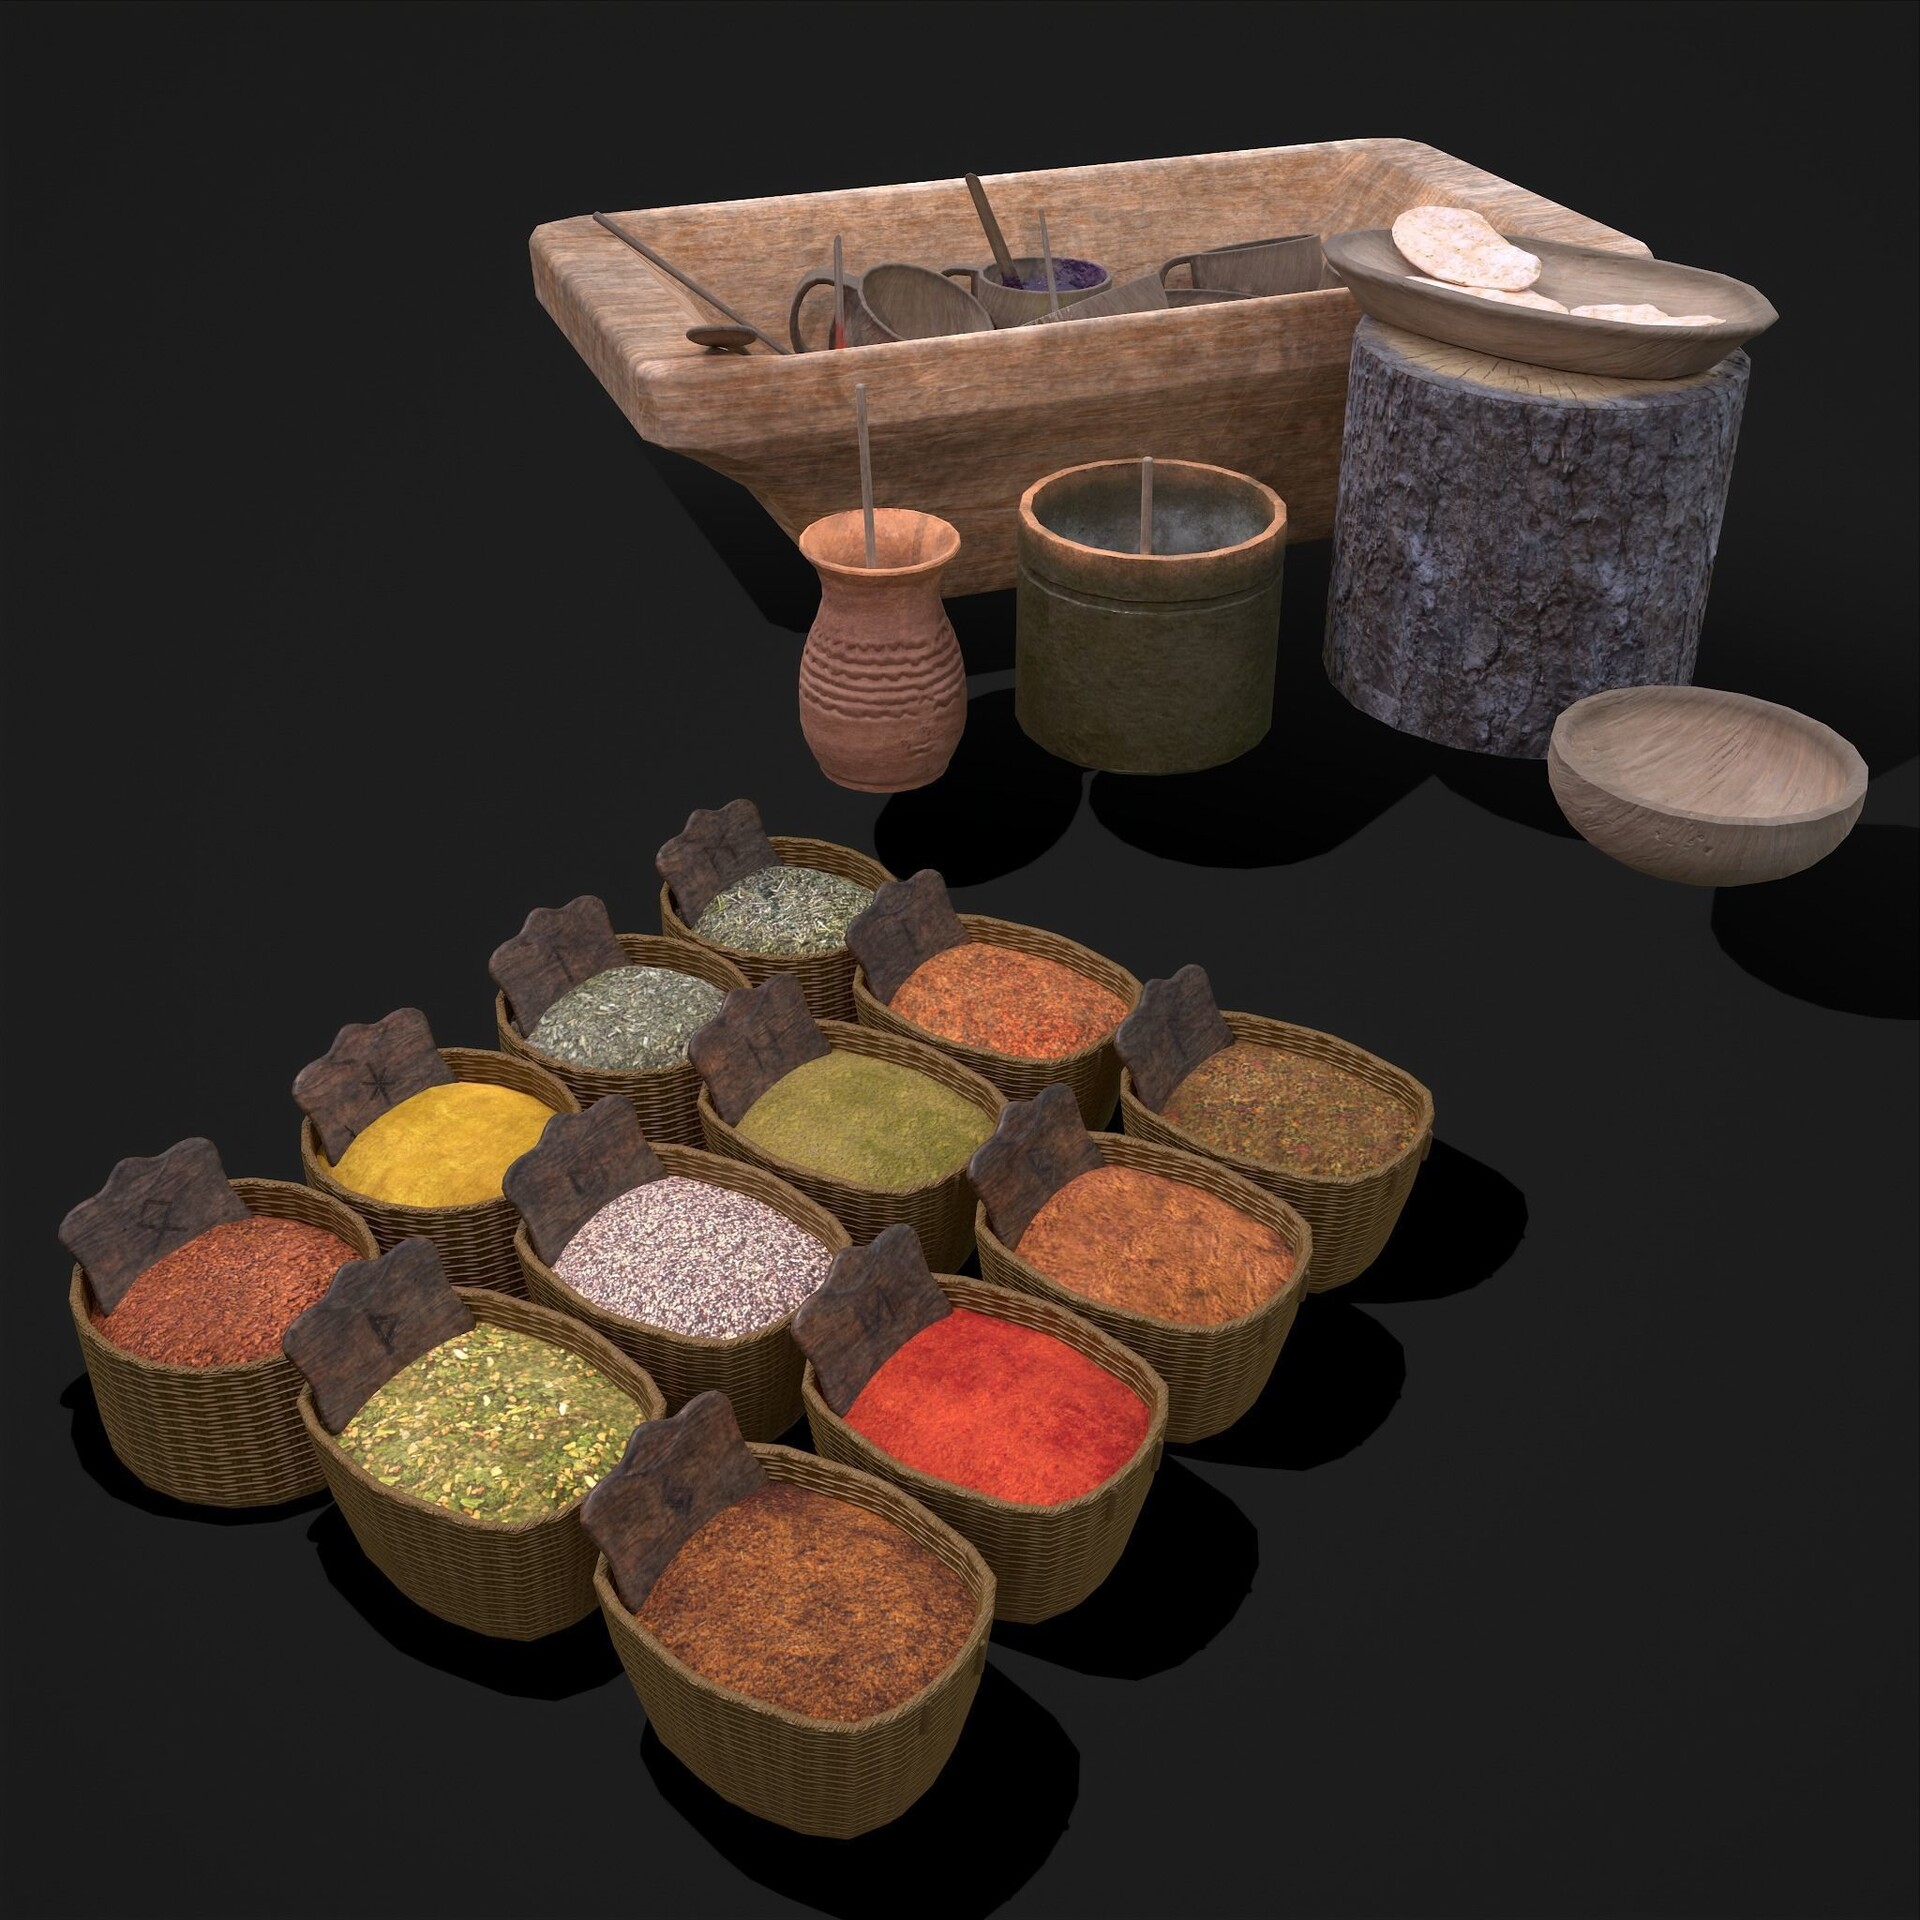 https://cdnb.artstation.com/p/assets/images/images/047/921/639/large/get-dex-entertainment-medieval-style-food-bowls-and-spice-baskets-3d-model-obj-fbx.jpg?1648756920